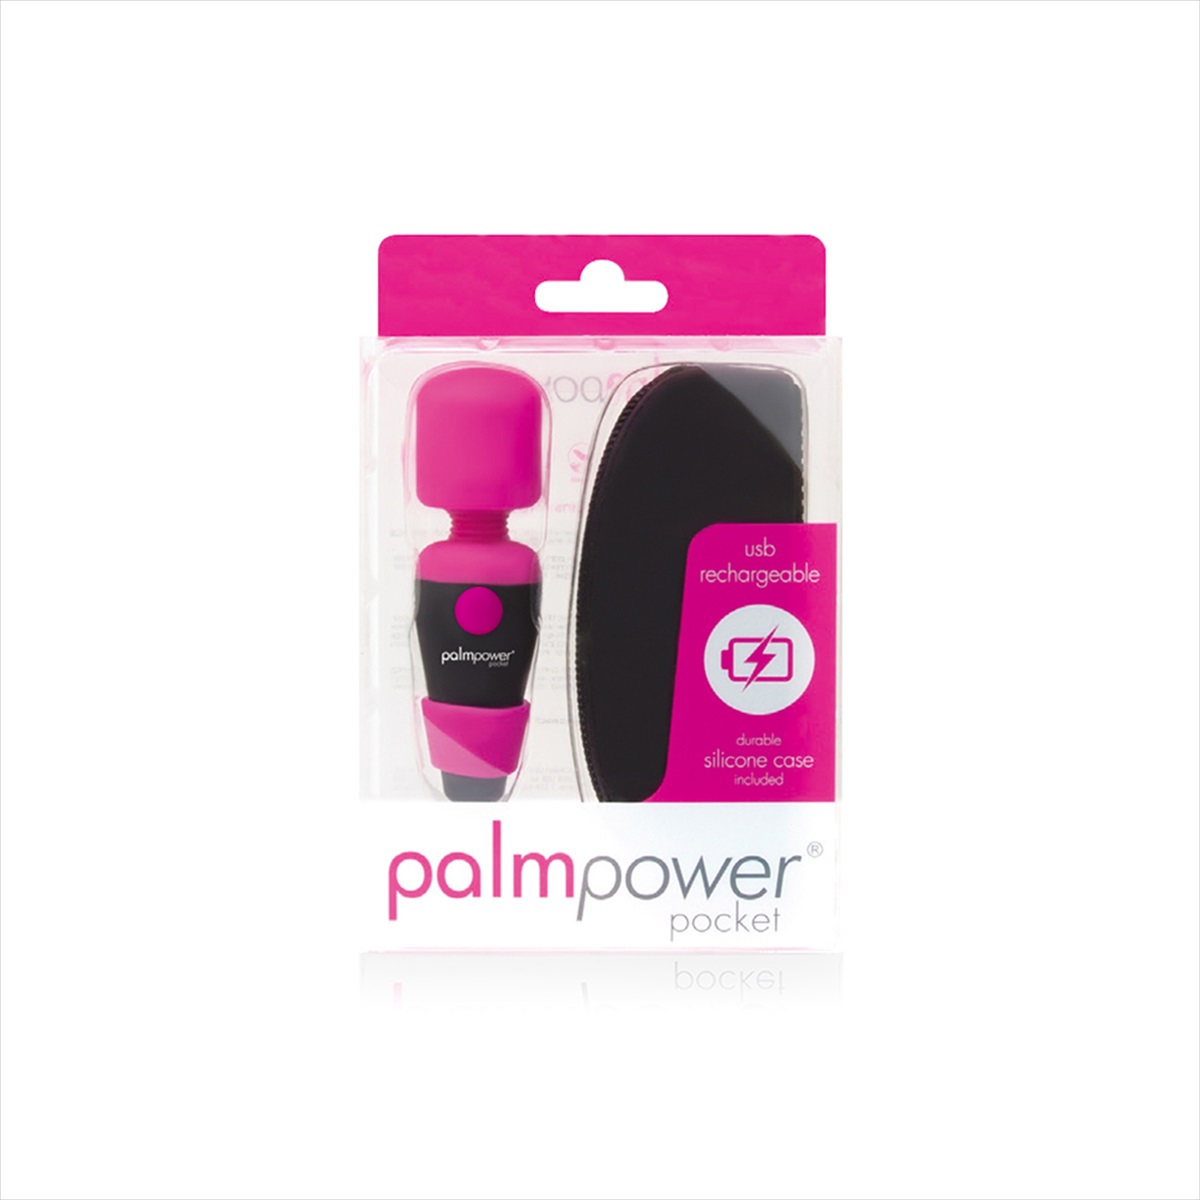 palmpower Pocket